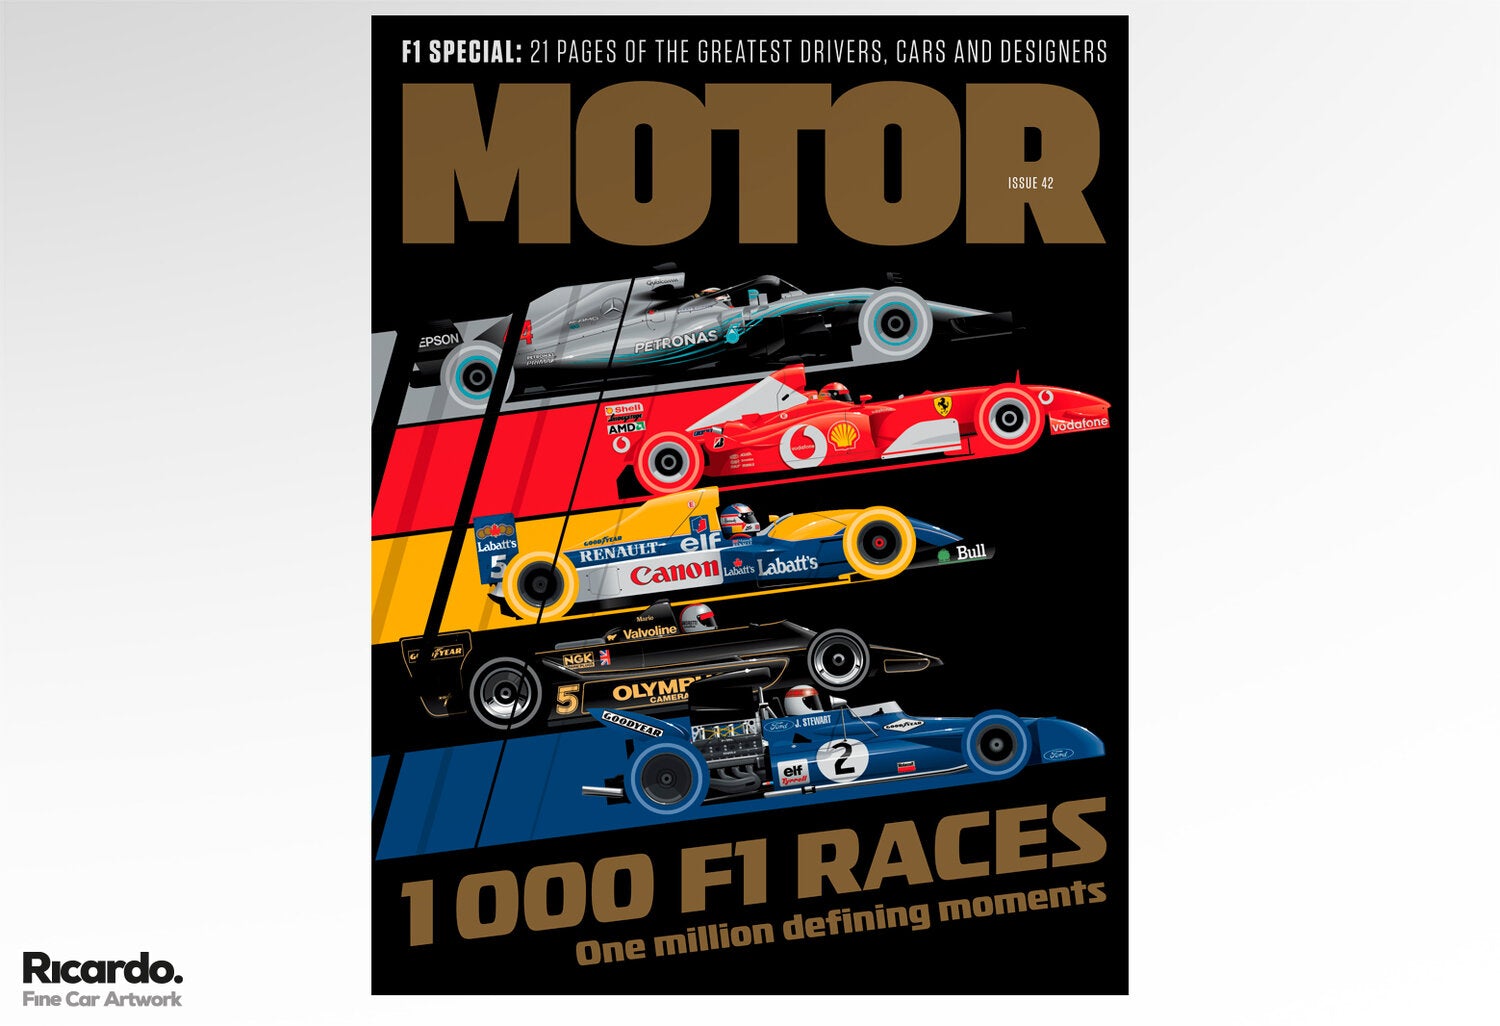 1000 F1 Races